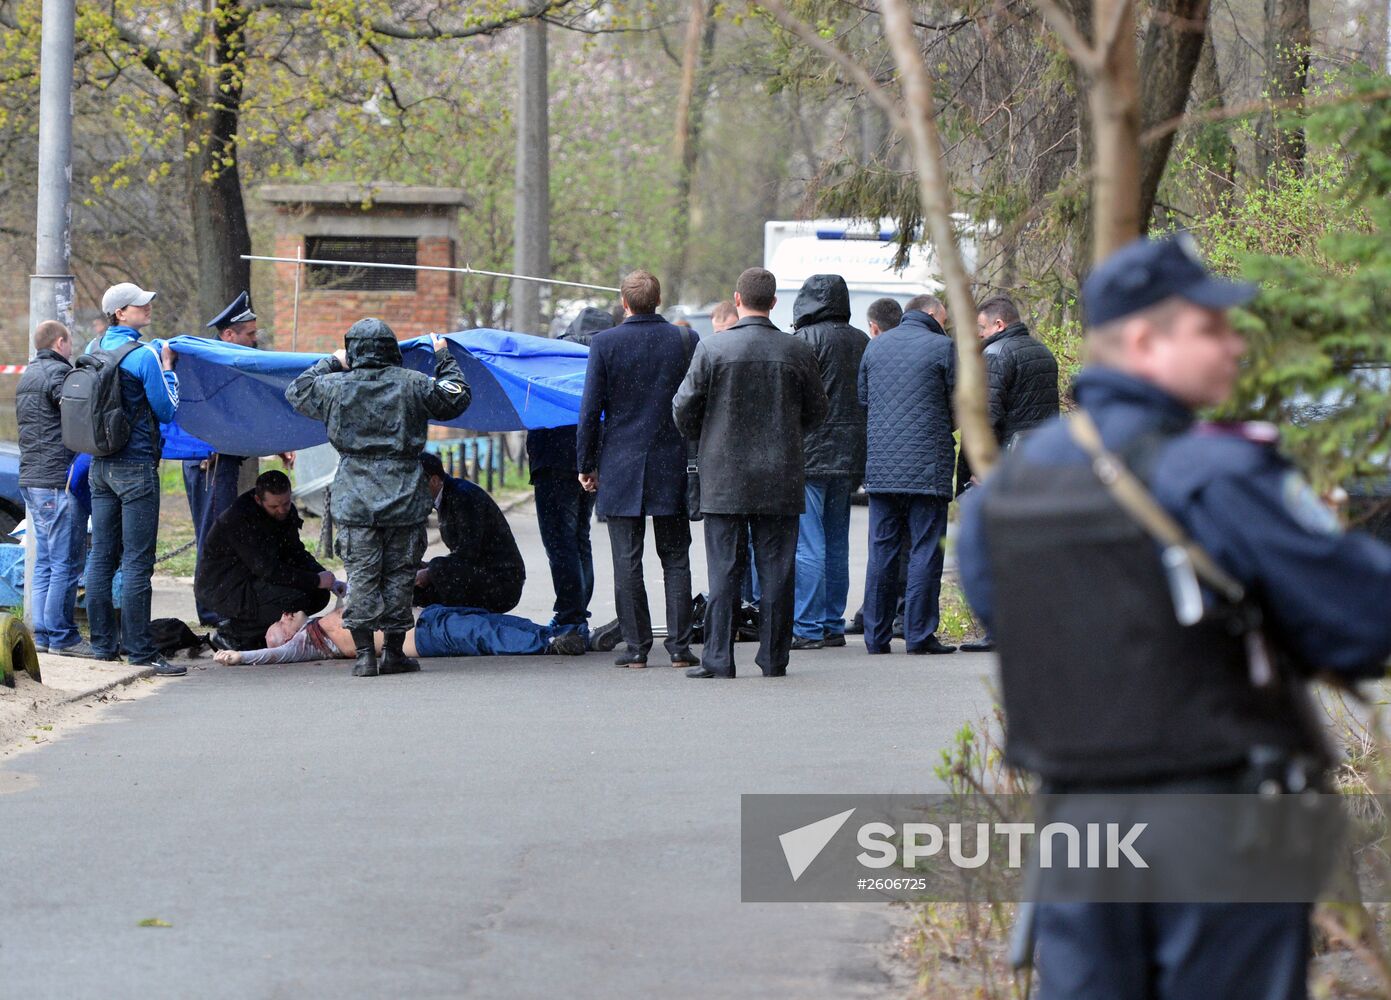 Opposition journalist Oles Buzina shot dead in Kiev